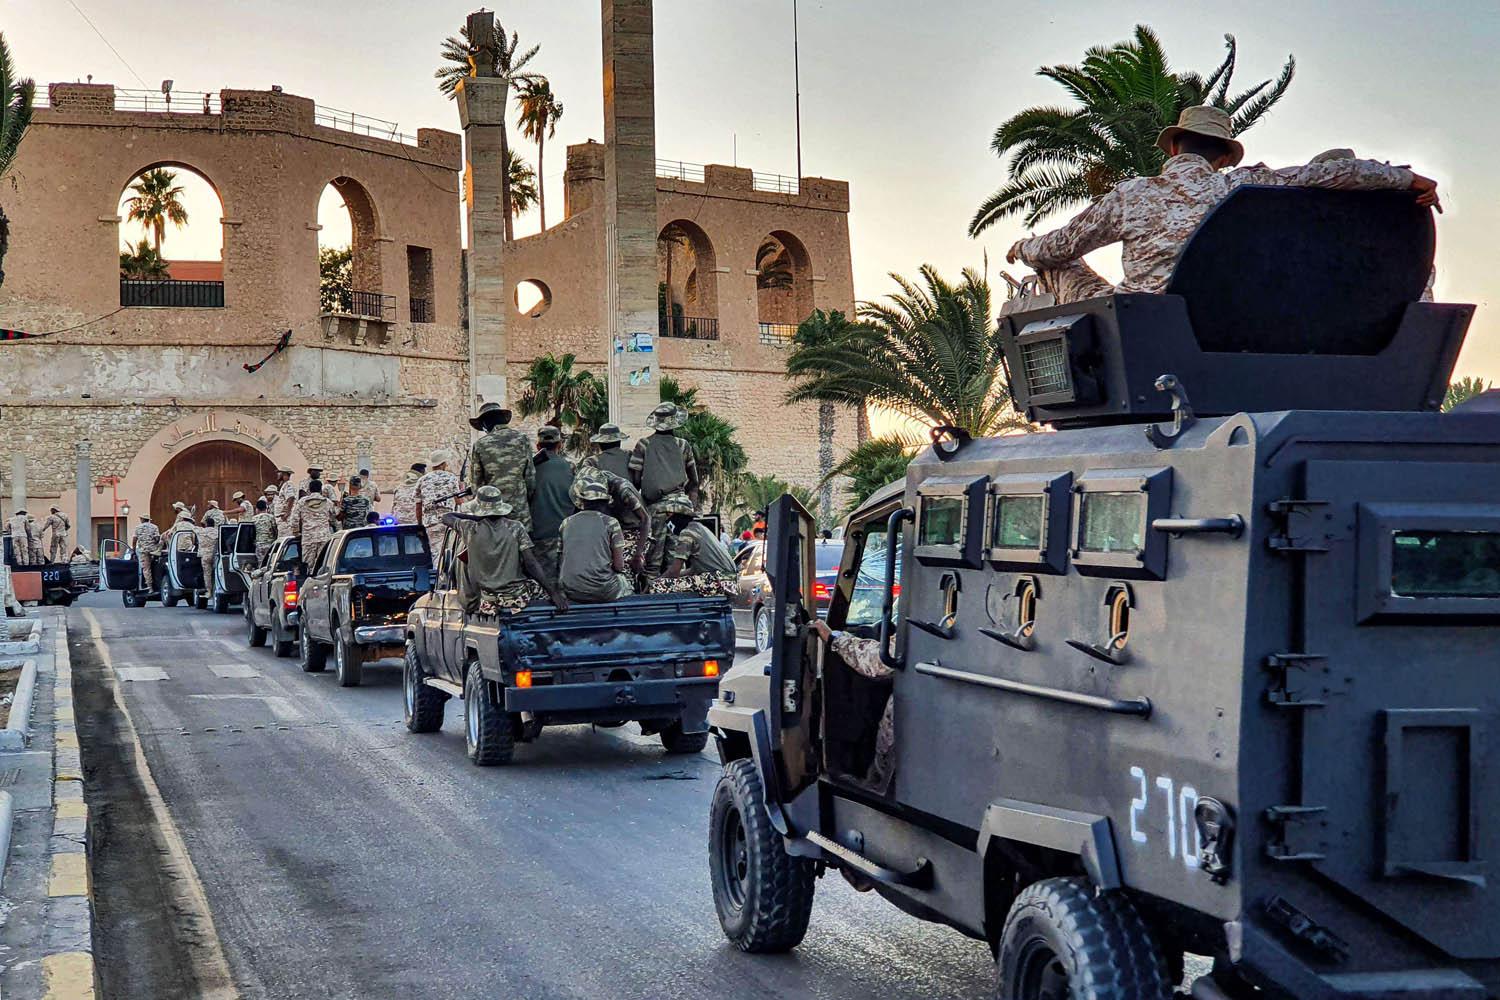 ميليشيا "كتيبة طرابلس" تستعرض قوتها وسط المدينة القديمة في طرابلس